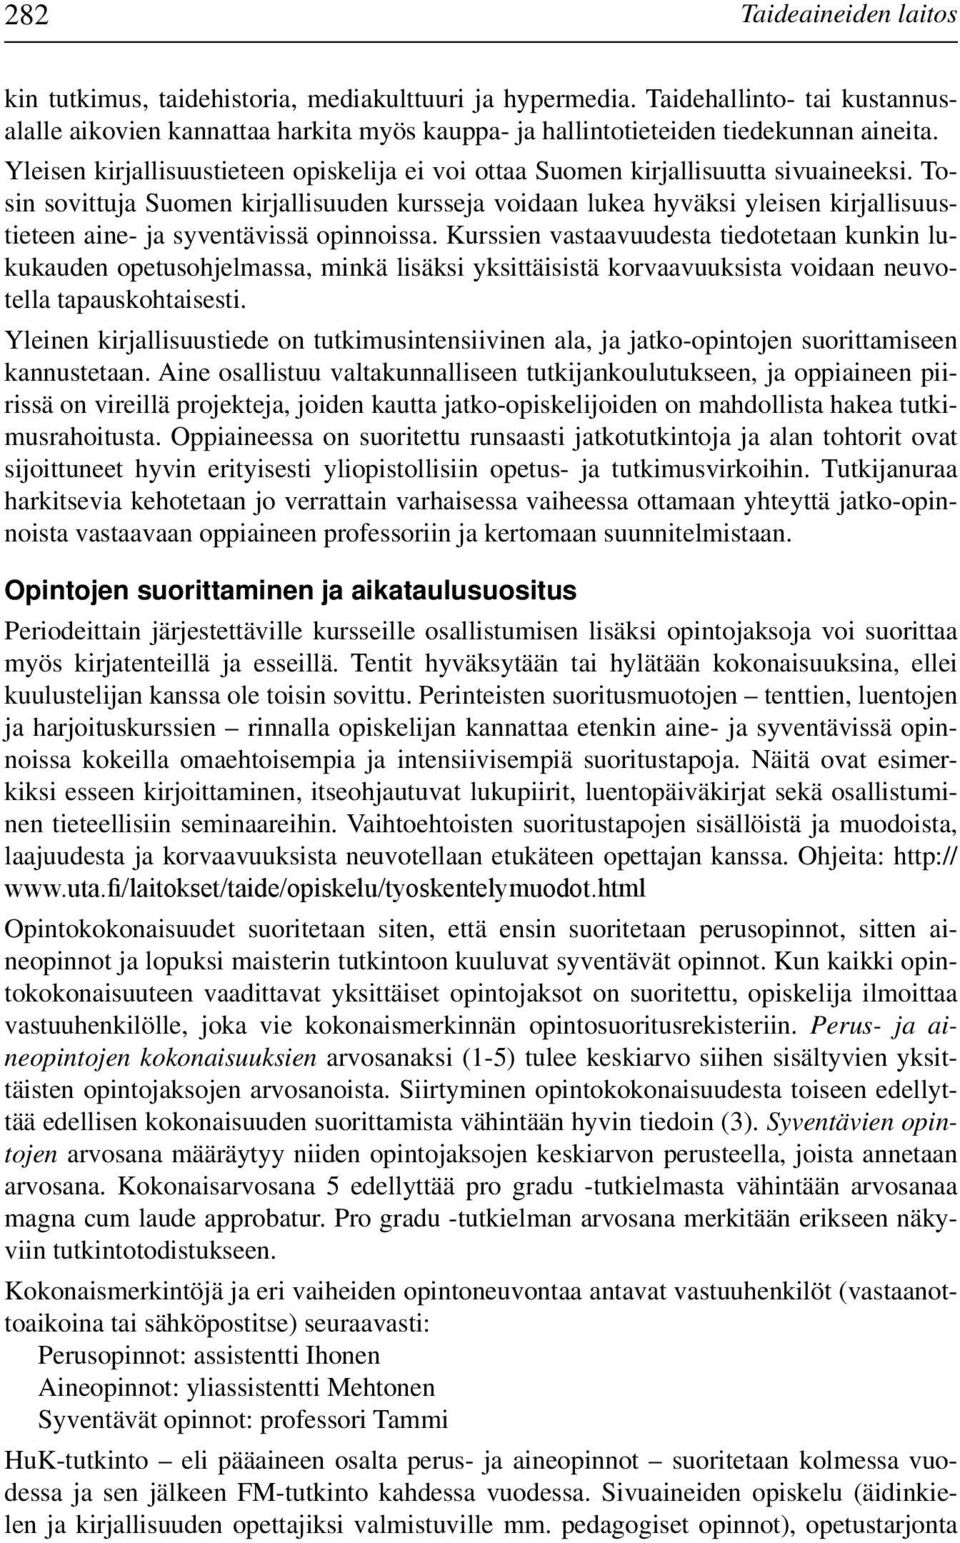 Tosin sovittuja Suomen kirjallisuuden kursseja voidaan lukea hyväksi yleisen kirjallisuustieteen aine- ja syventävissä opinnoissa.